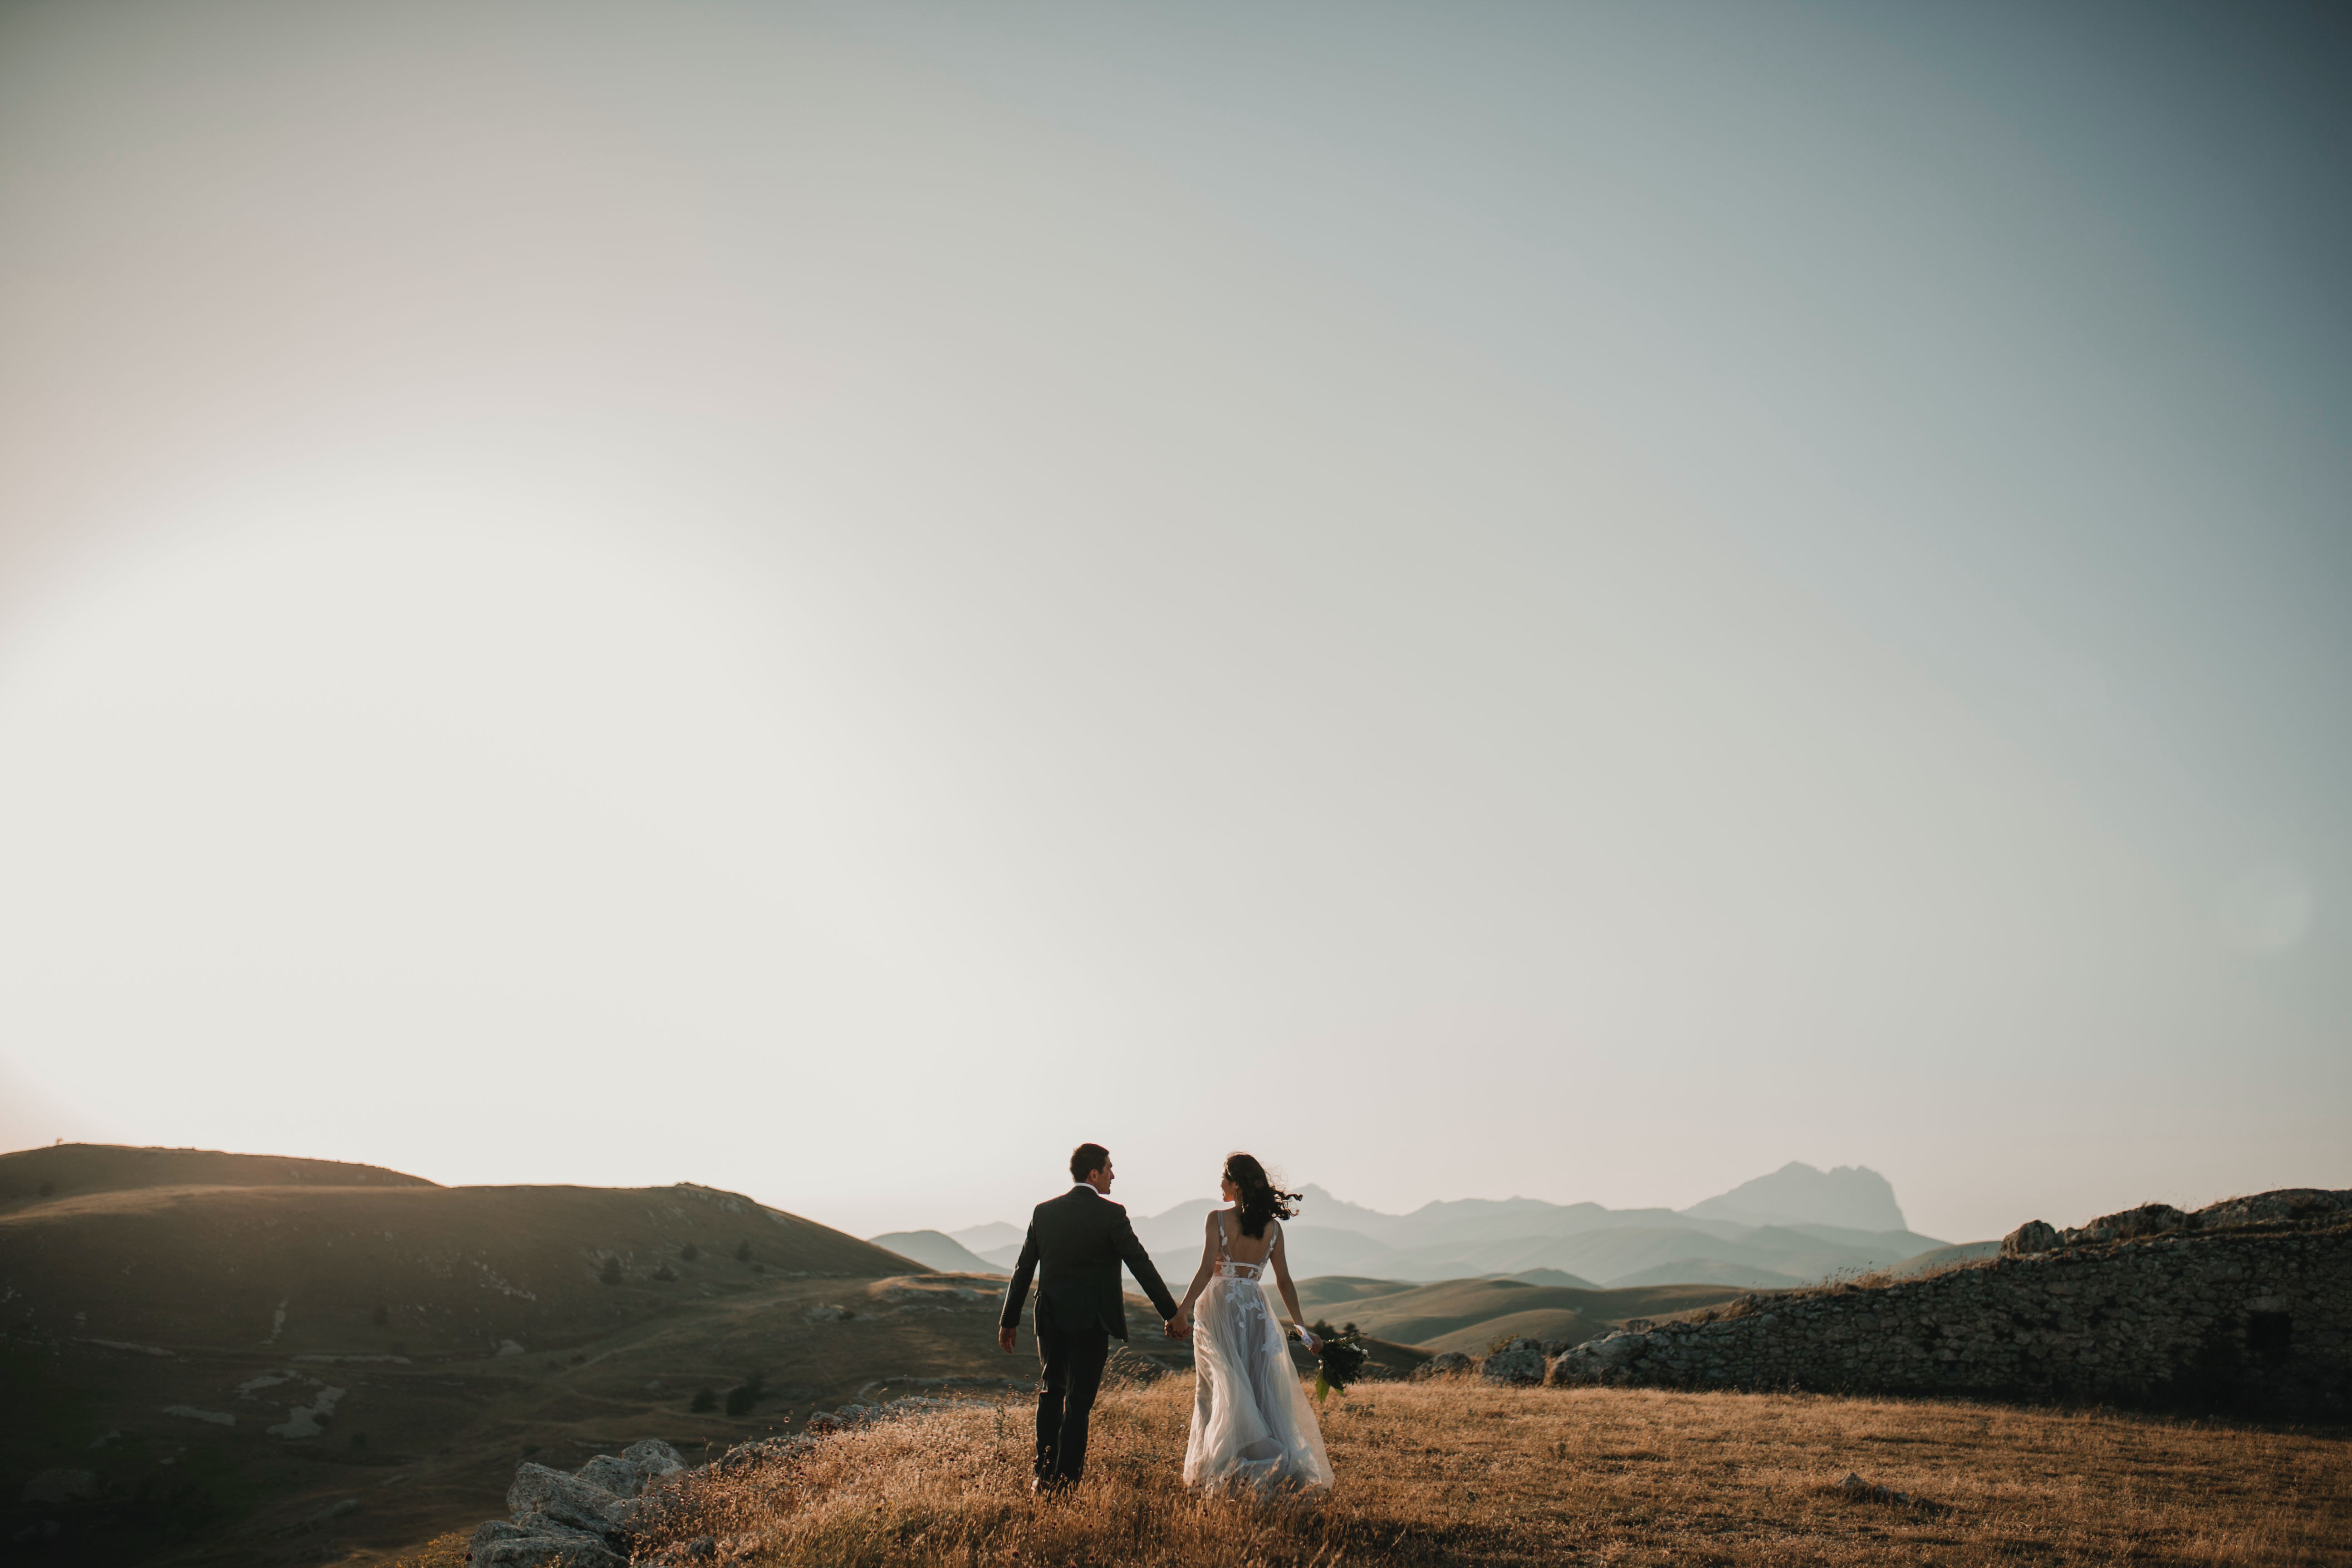 Saiba mais sobre o Destination Wedding e suas vantagens